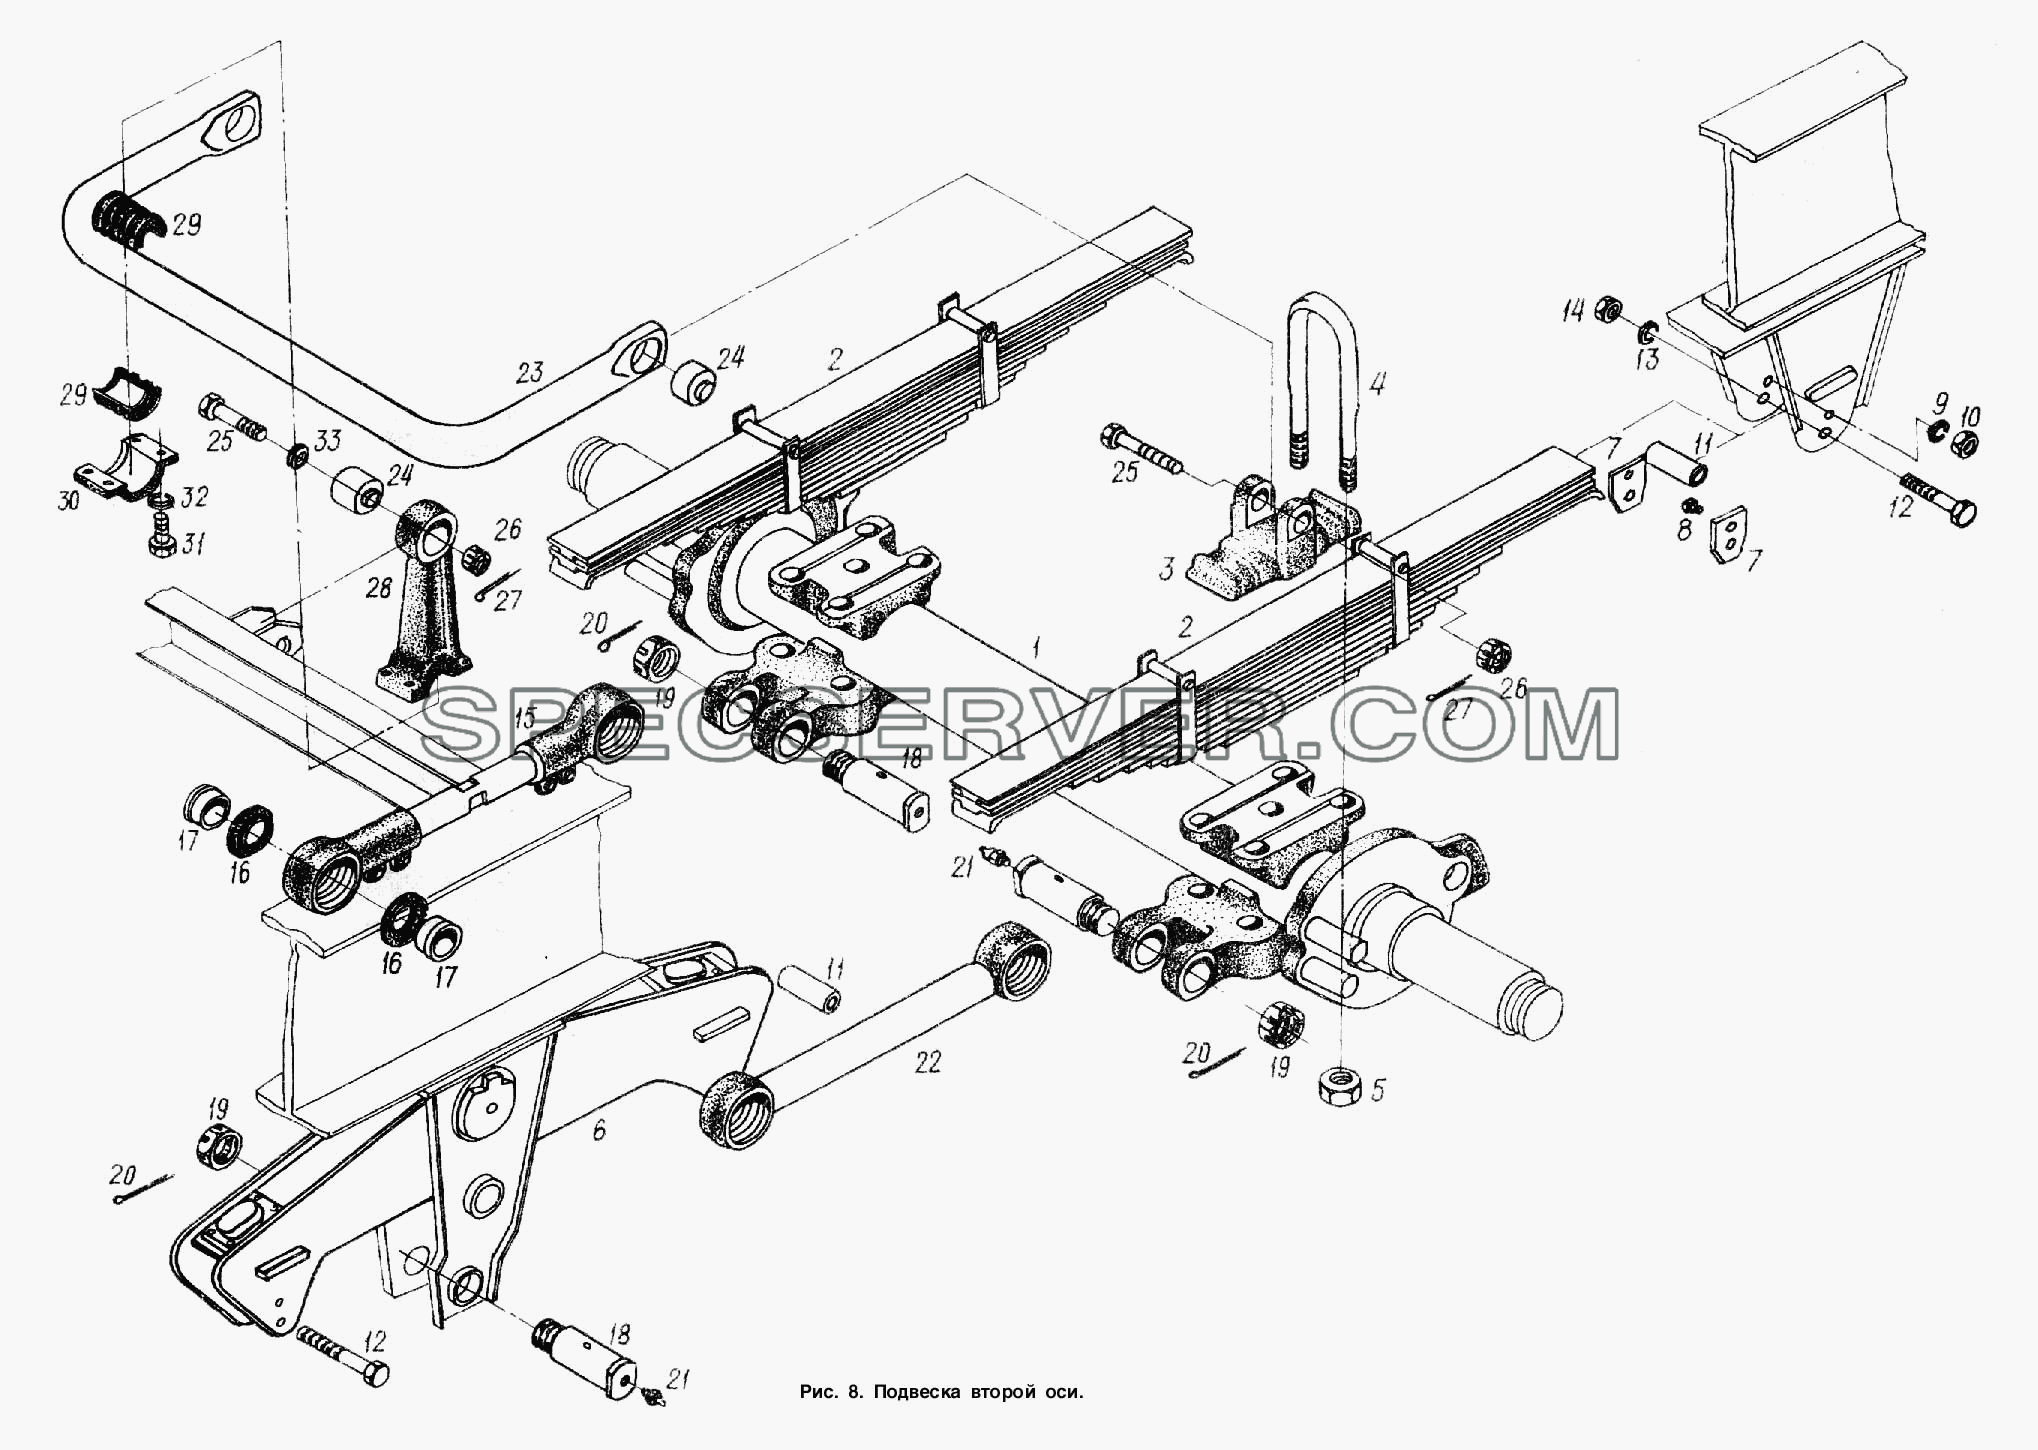 Подвеска. Установка второй оси для МАЗ-93866 (список запасных частей)